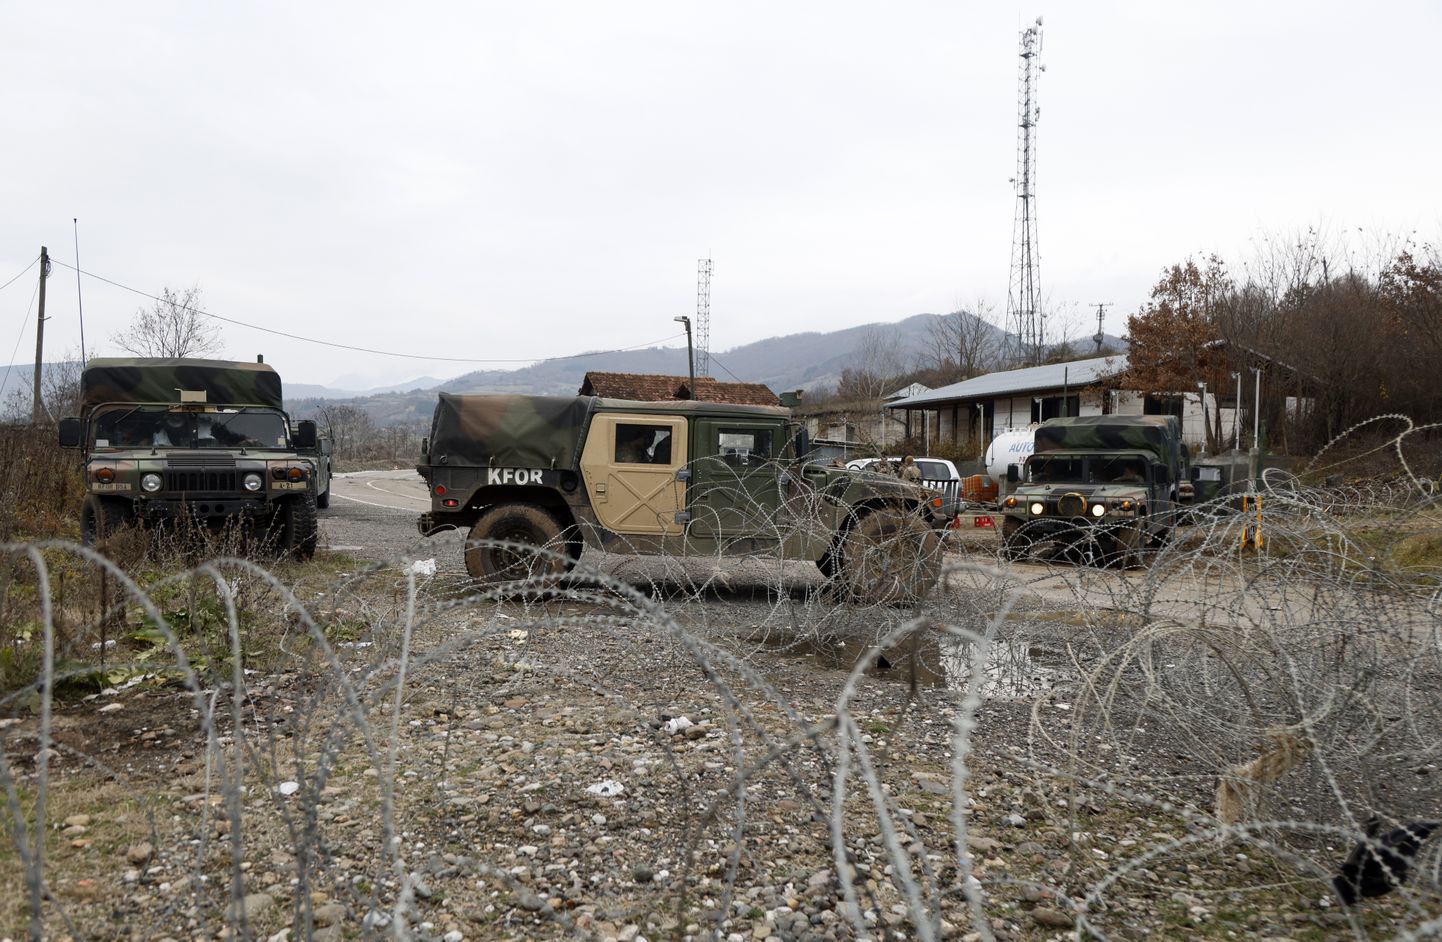 USA sõdurid, kes on osa NATO rahuvalvemissioonist KFOR, kontrollpunktis põhja Kosovos Serbia-Kosovo piiri lähistel.